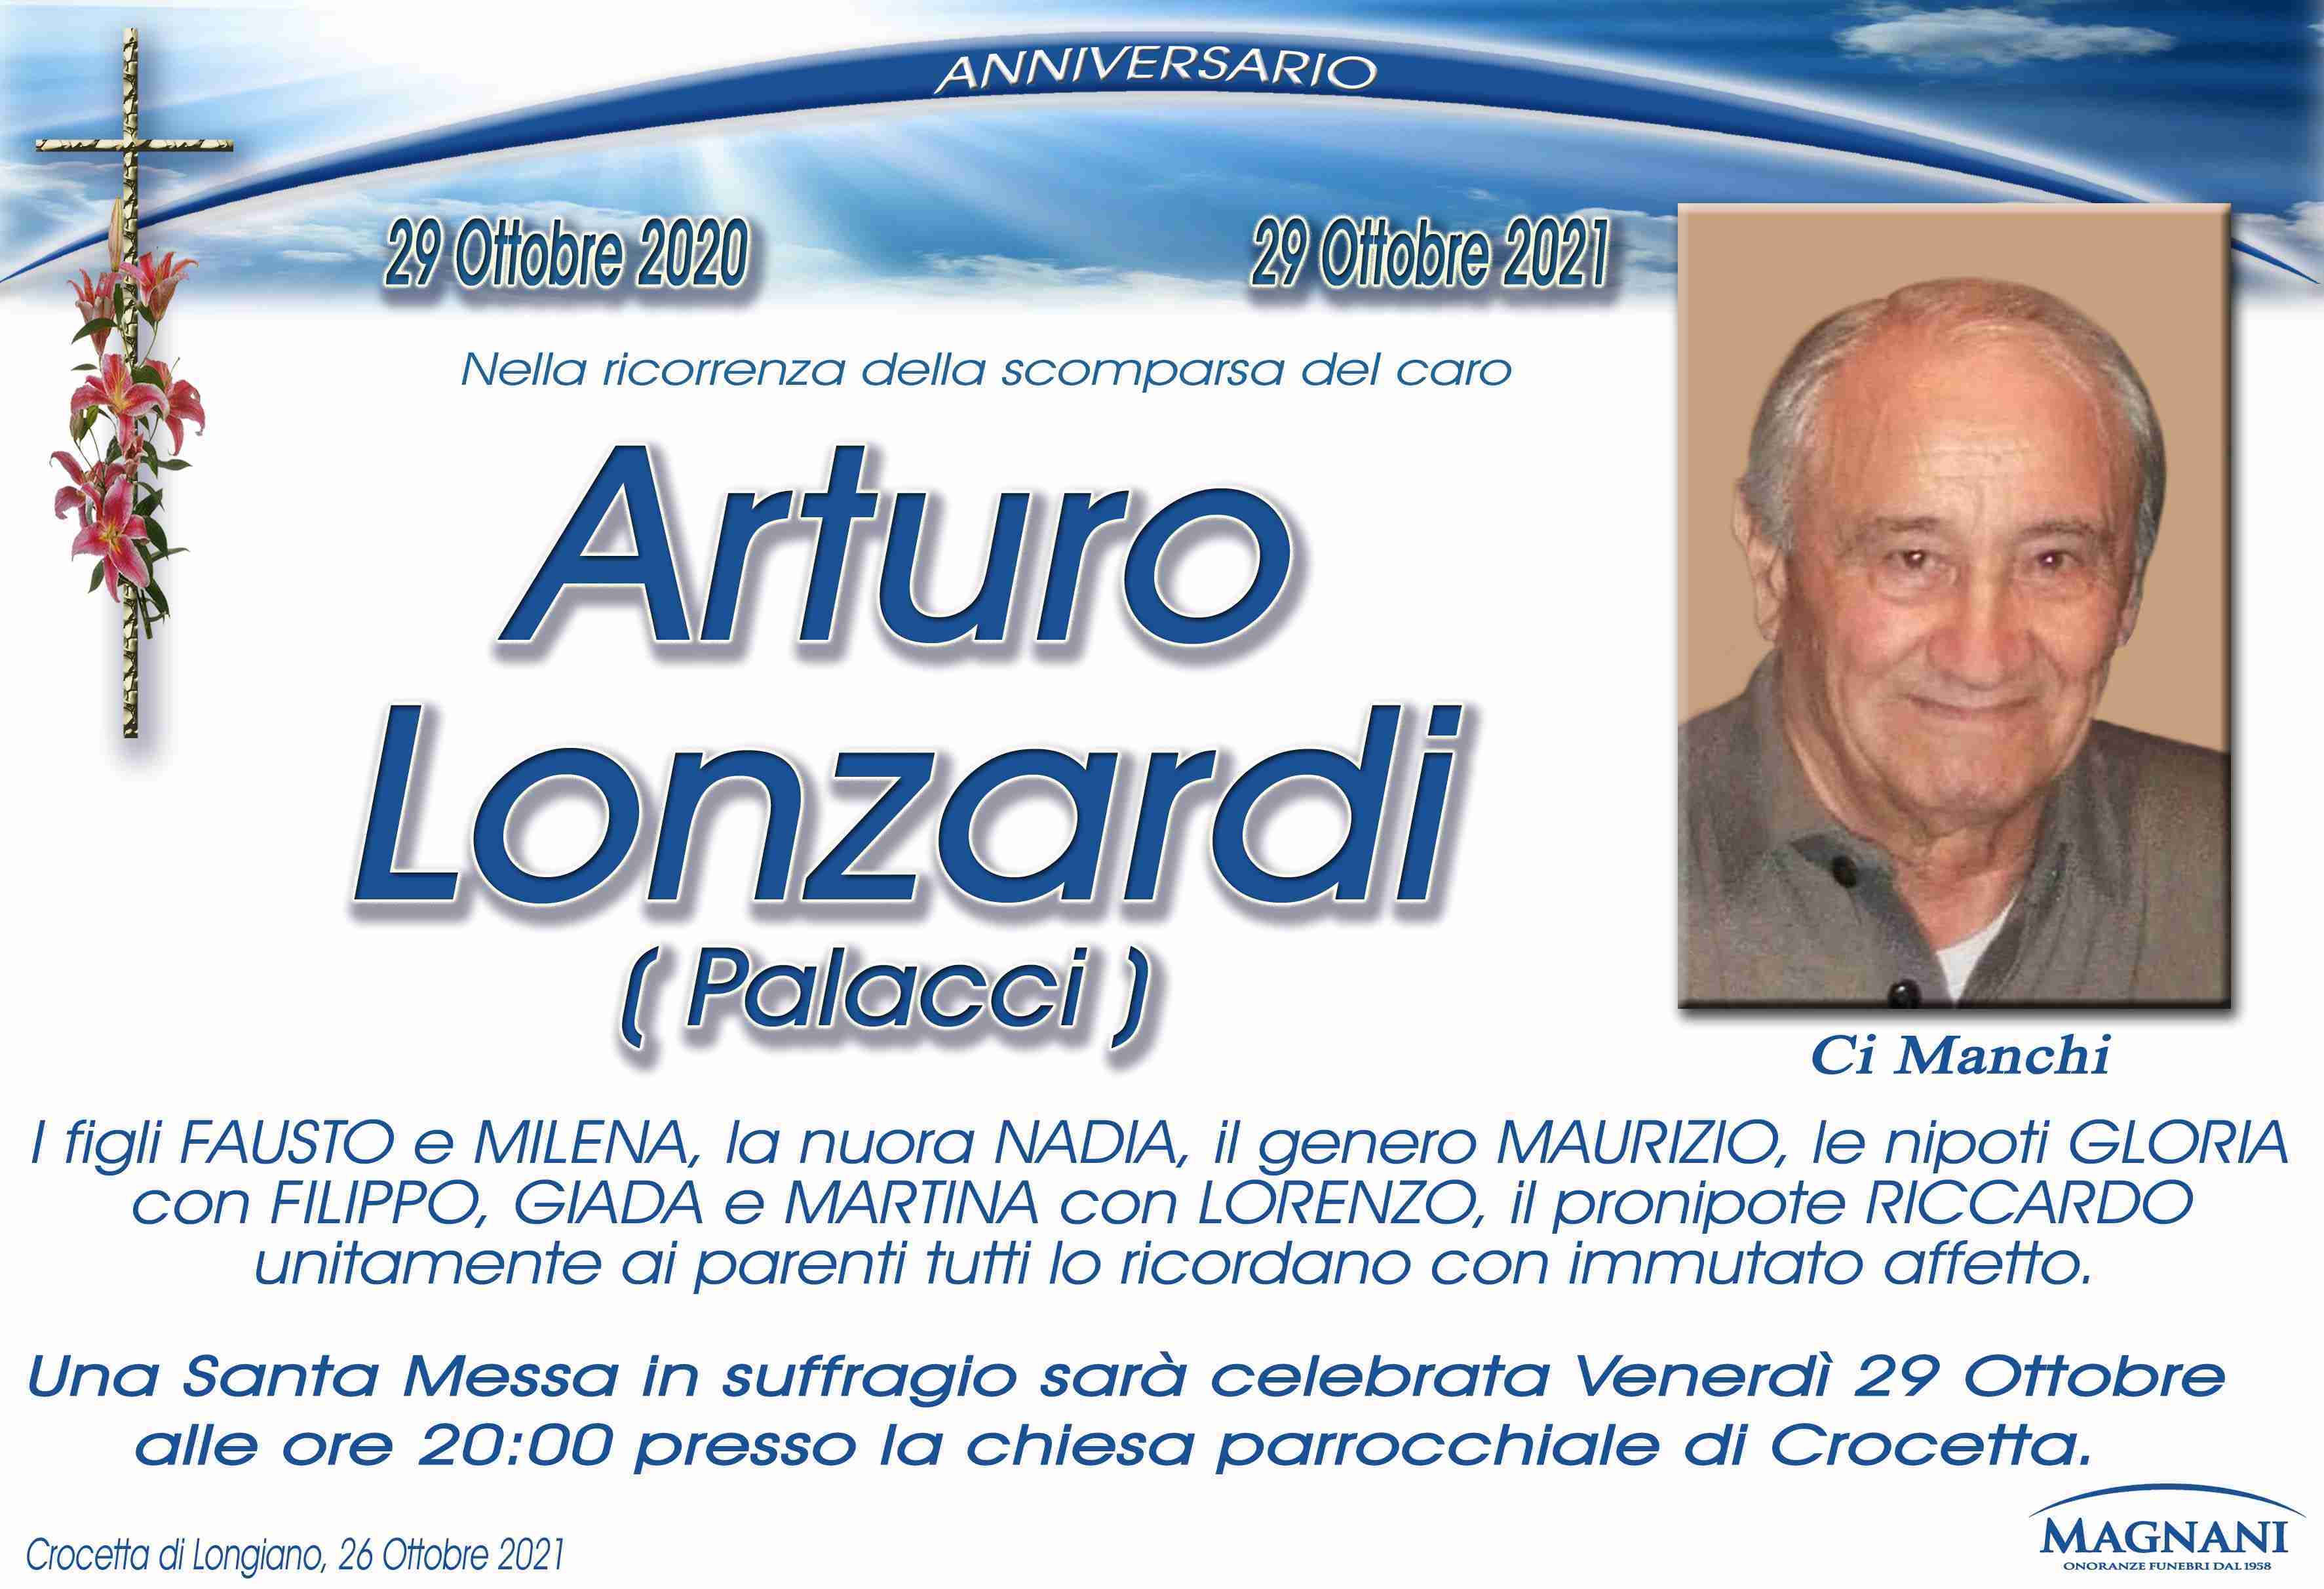 Arturo Lonzardi